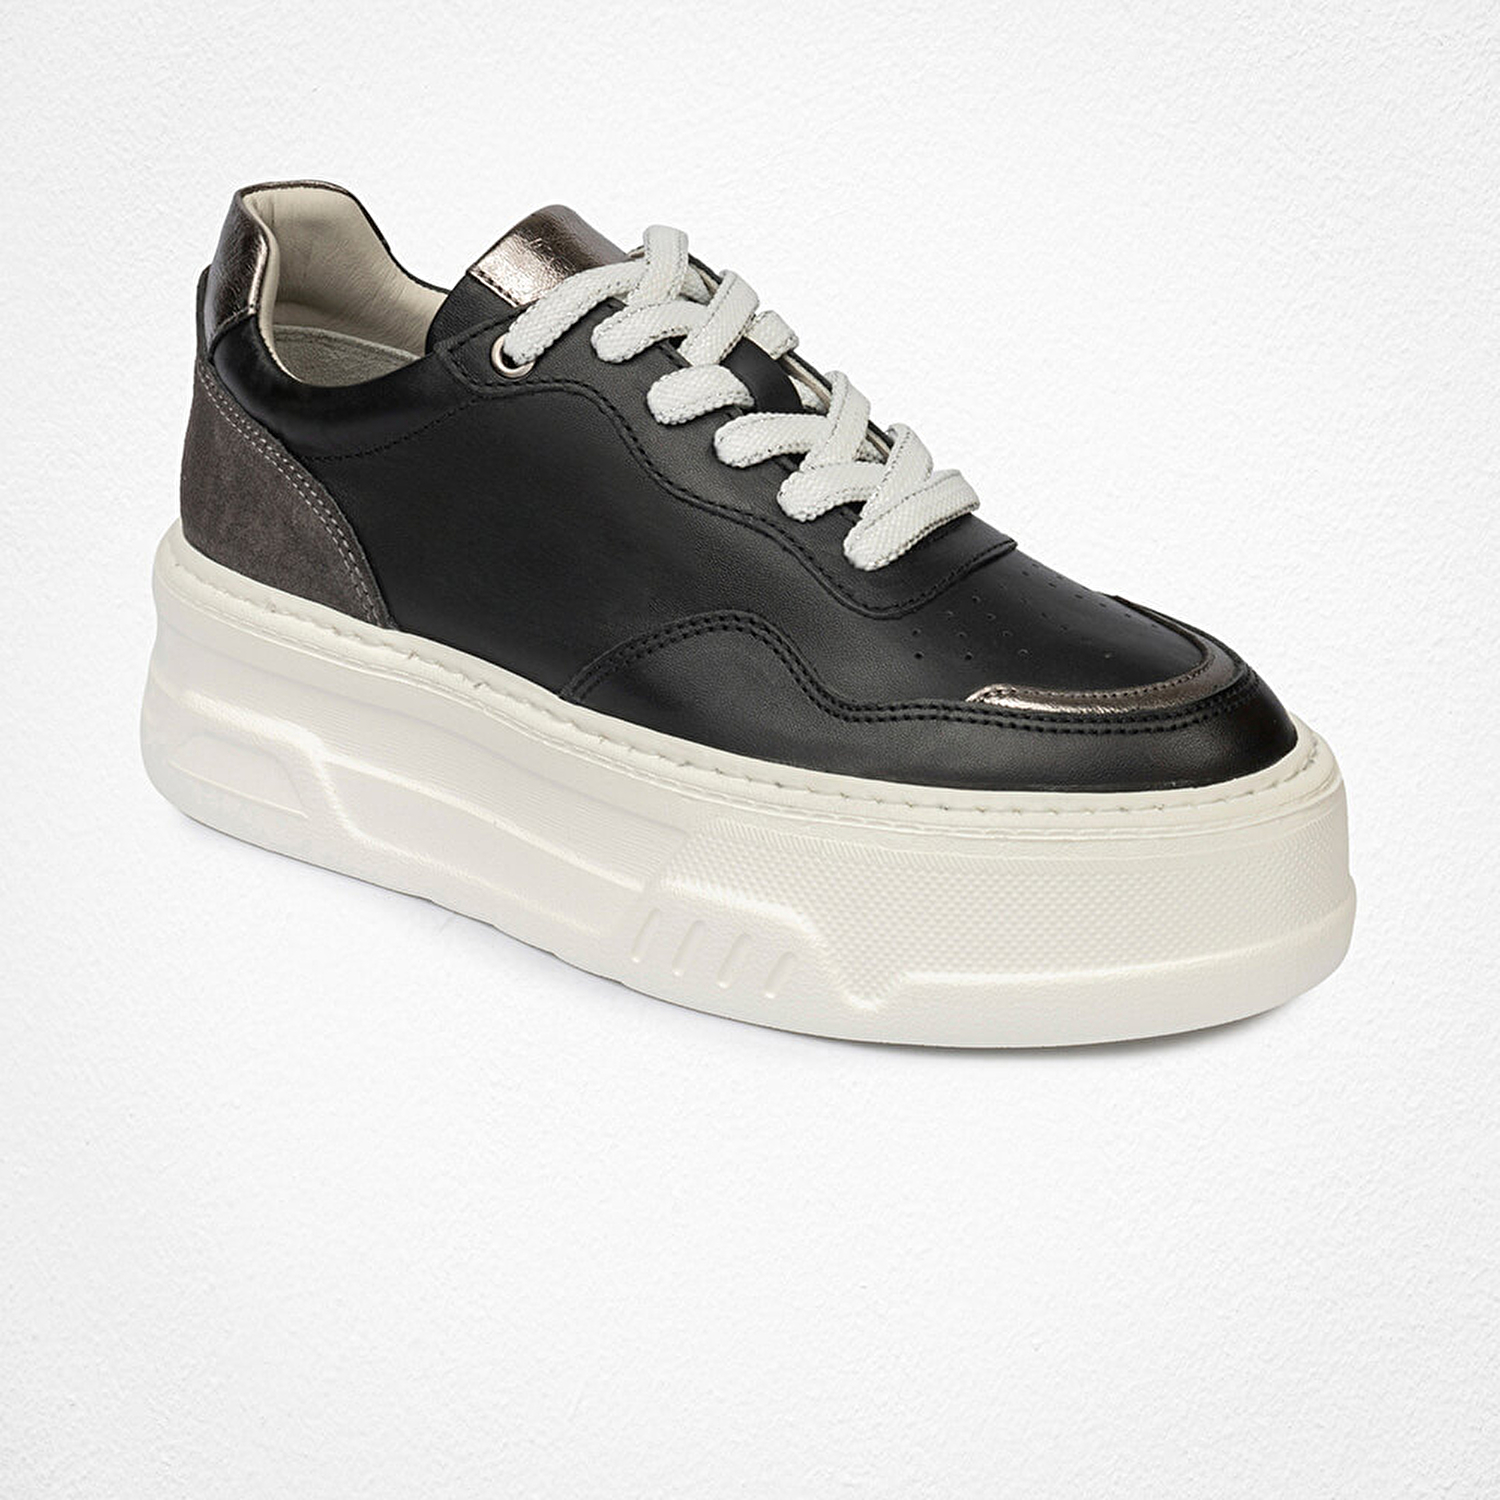 Kadın Siyah Çelik Hakiki Deri Sneaker Ayakkabı 4Y2SA59041-1